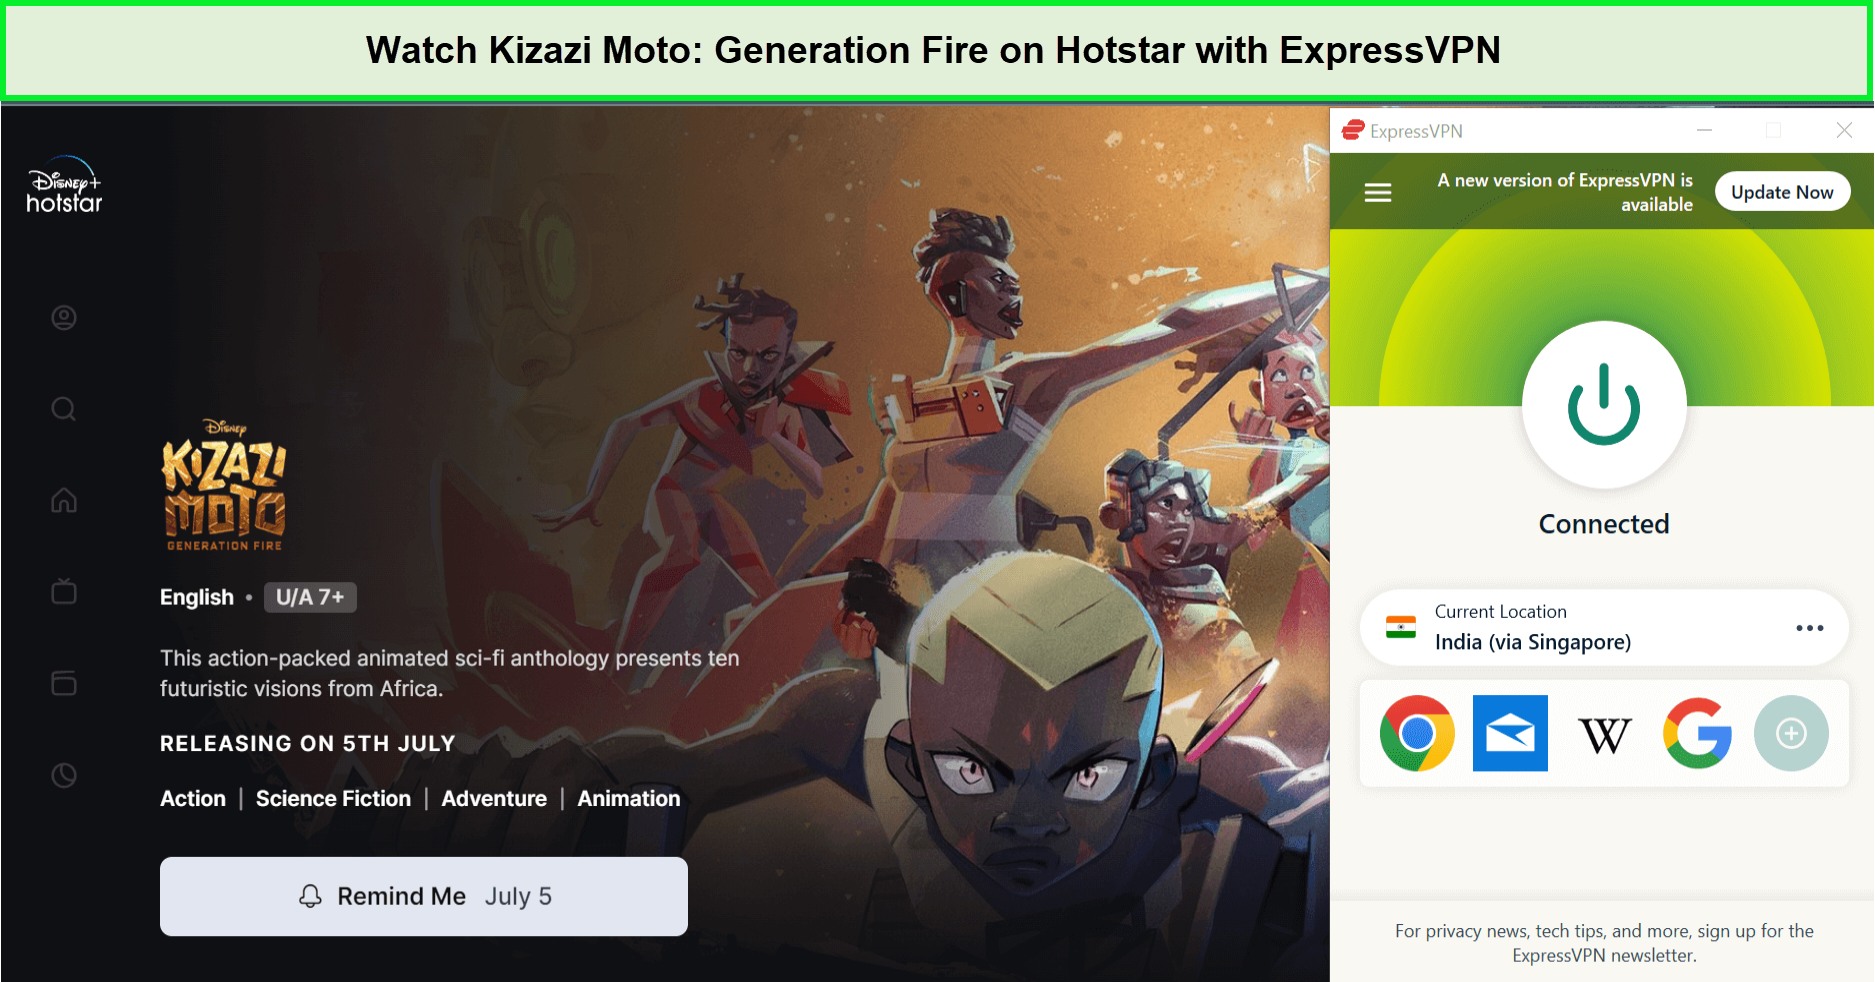 Watch-Kizazi-Moto-Generation-Fire-in-Japan-on-Hotstar-with-ExpressVPN